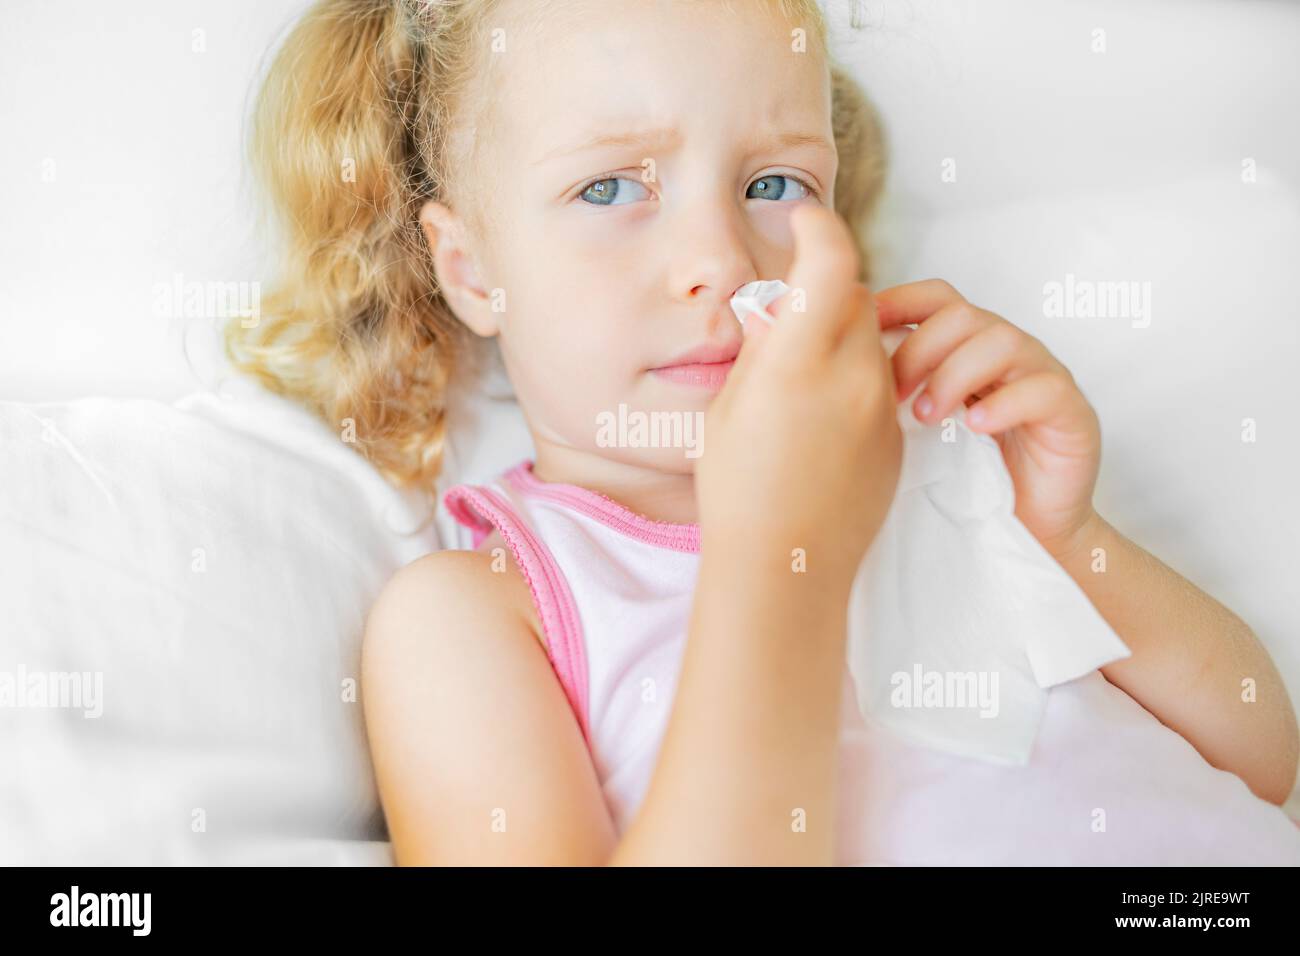 Das Kind wischt seine Nase mit einer Serviette ab. Stockfoto